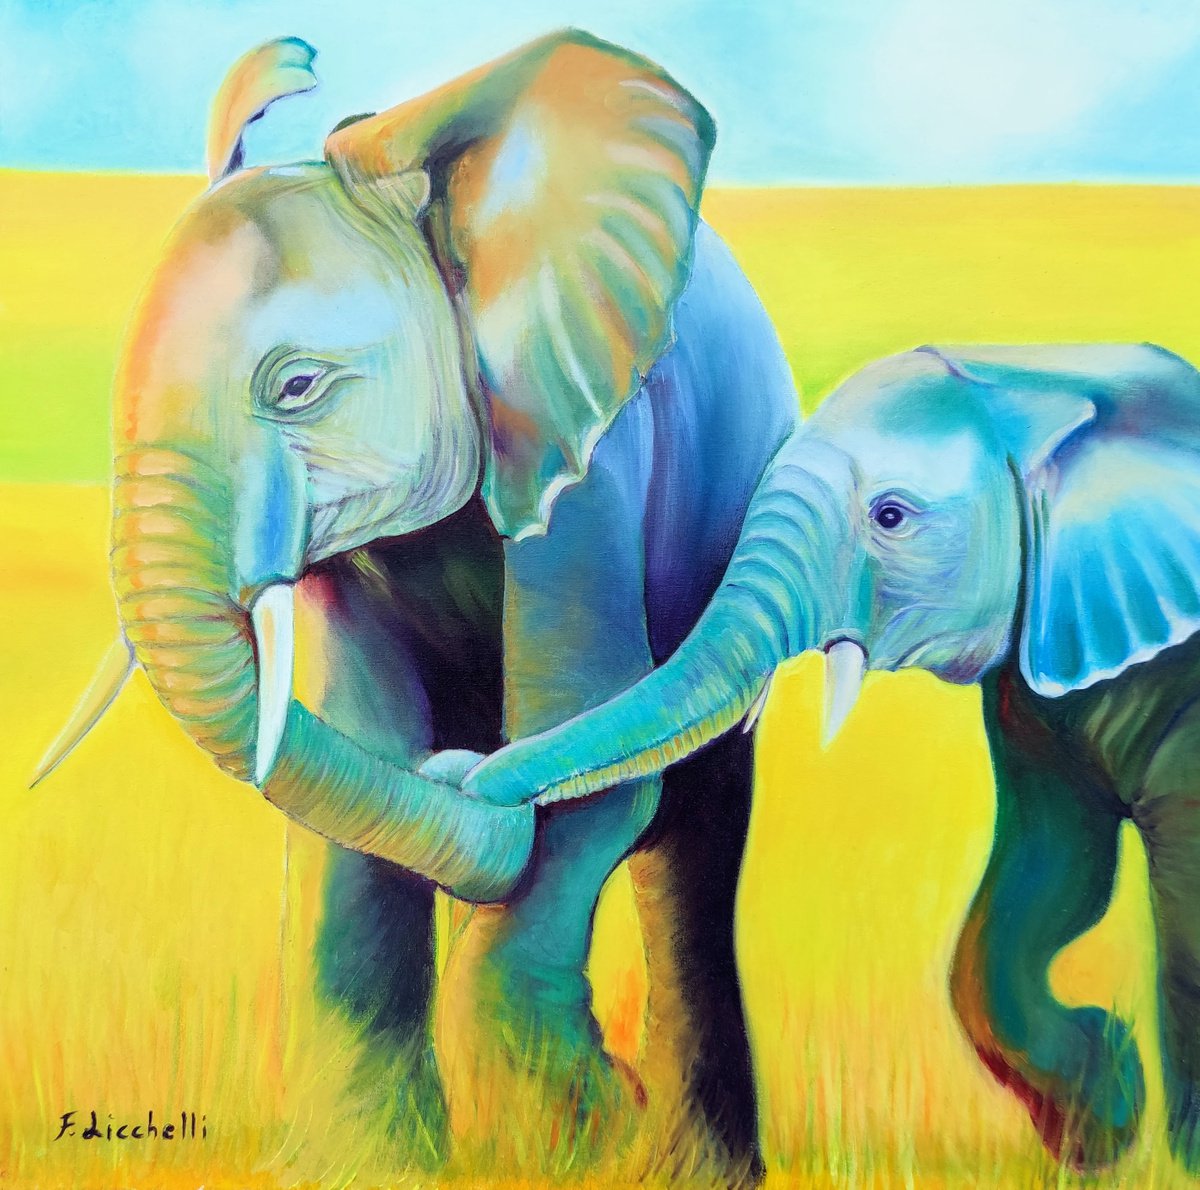 Walking elephants by Francesca Licchelli